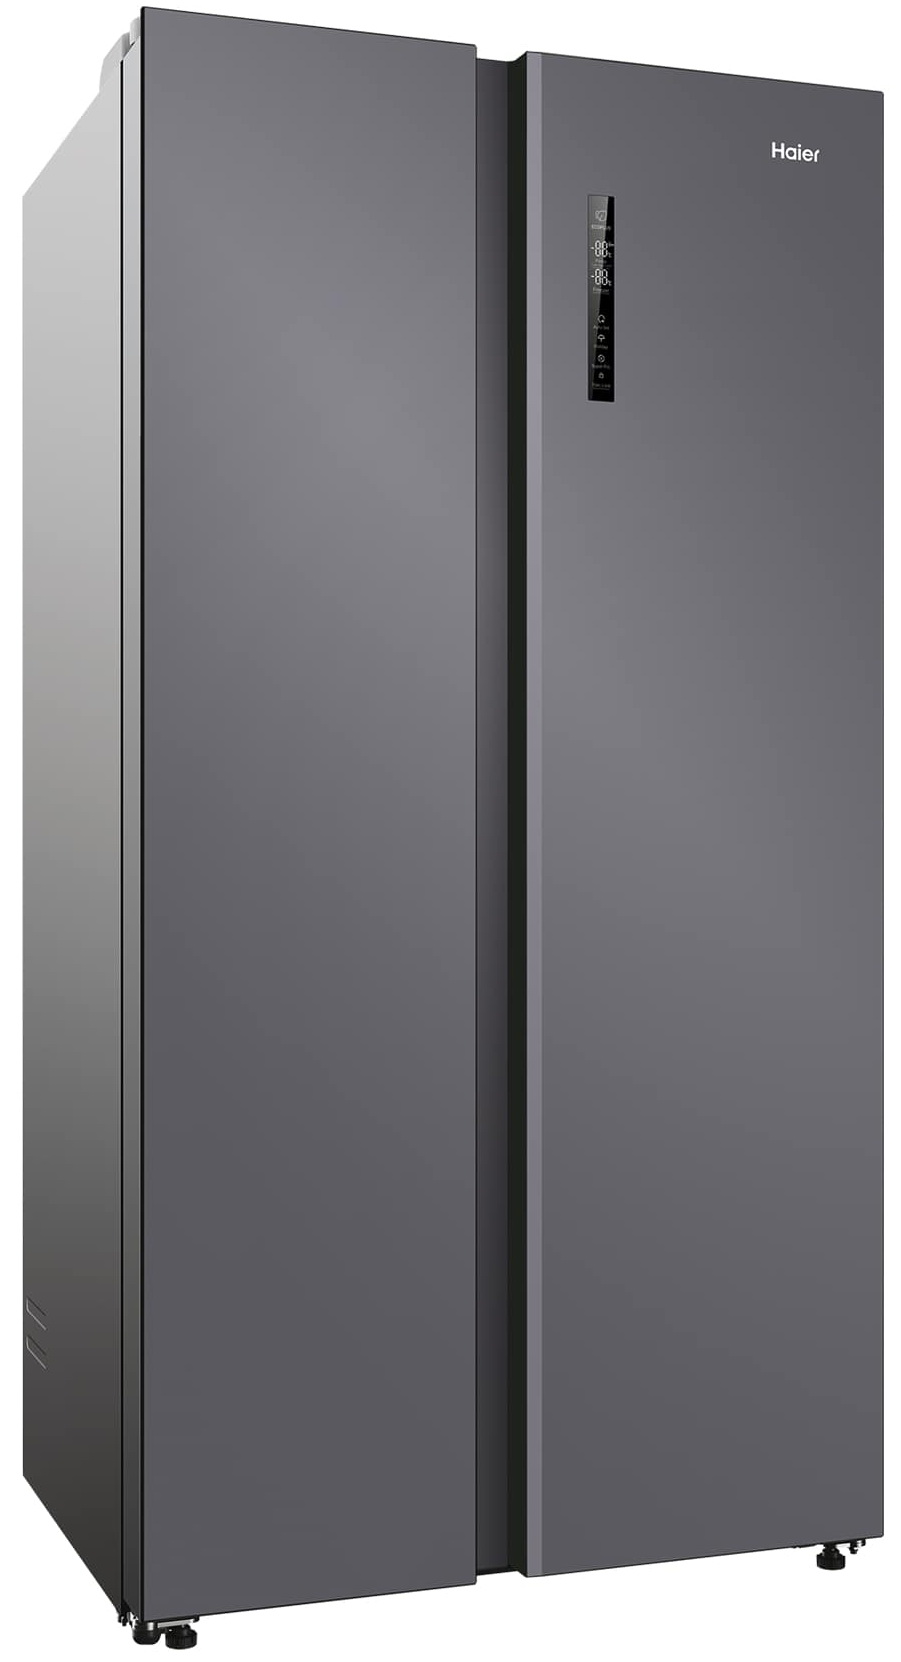 Холодильник Haier 600DM7RU серебристый холодильник haier hrf 541dm7ru серебристый